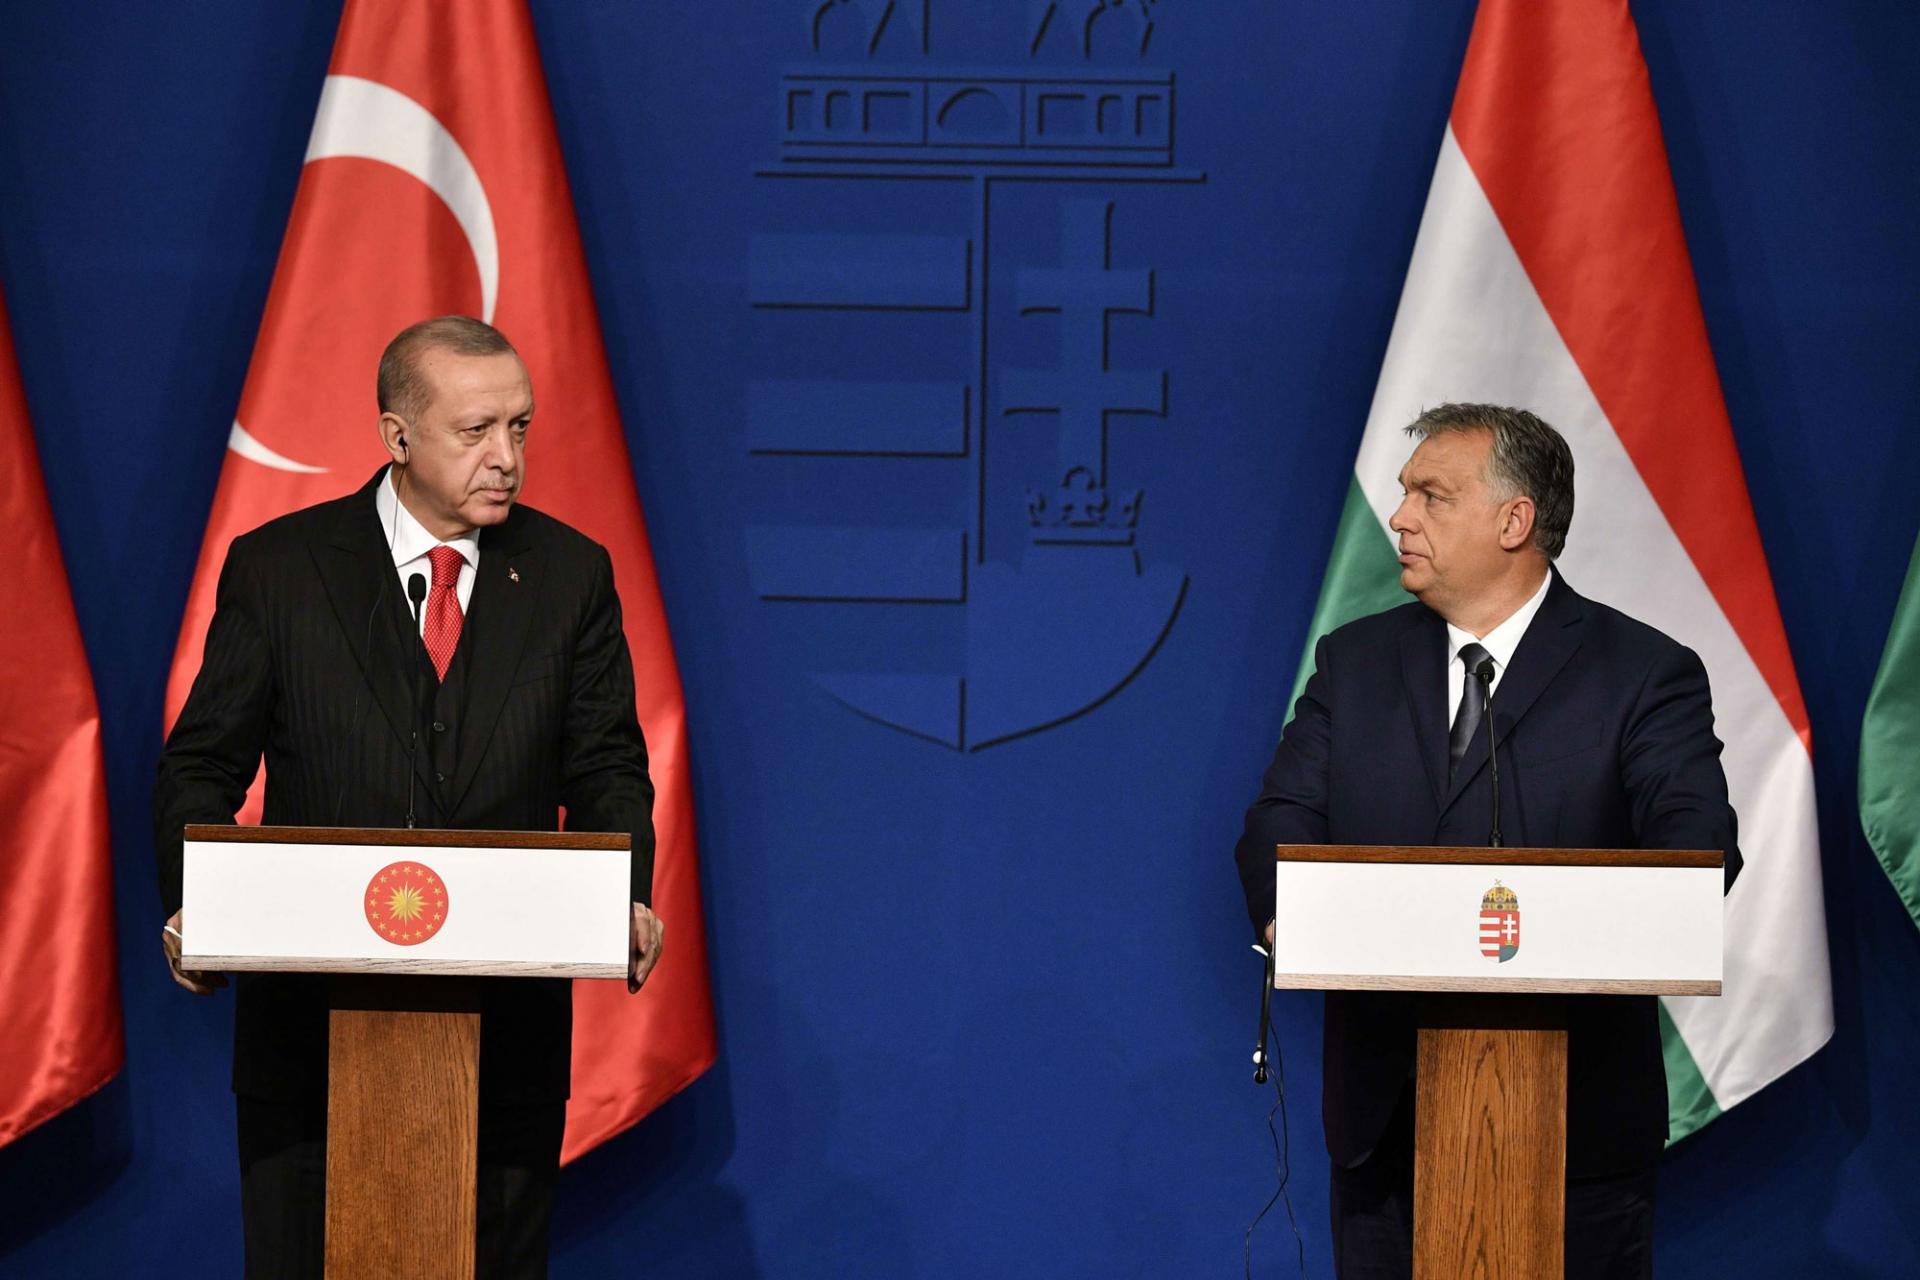 الرئيس التركي رجب طيب أردوغان في مؤتمر صحفي مع رئيس الوزراء المجري فكتور اوربان